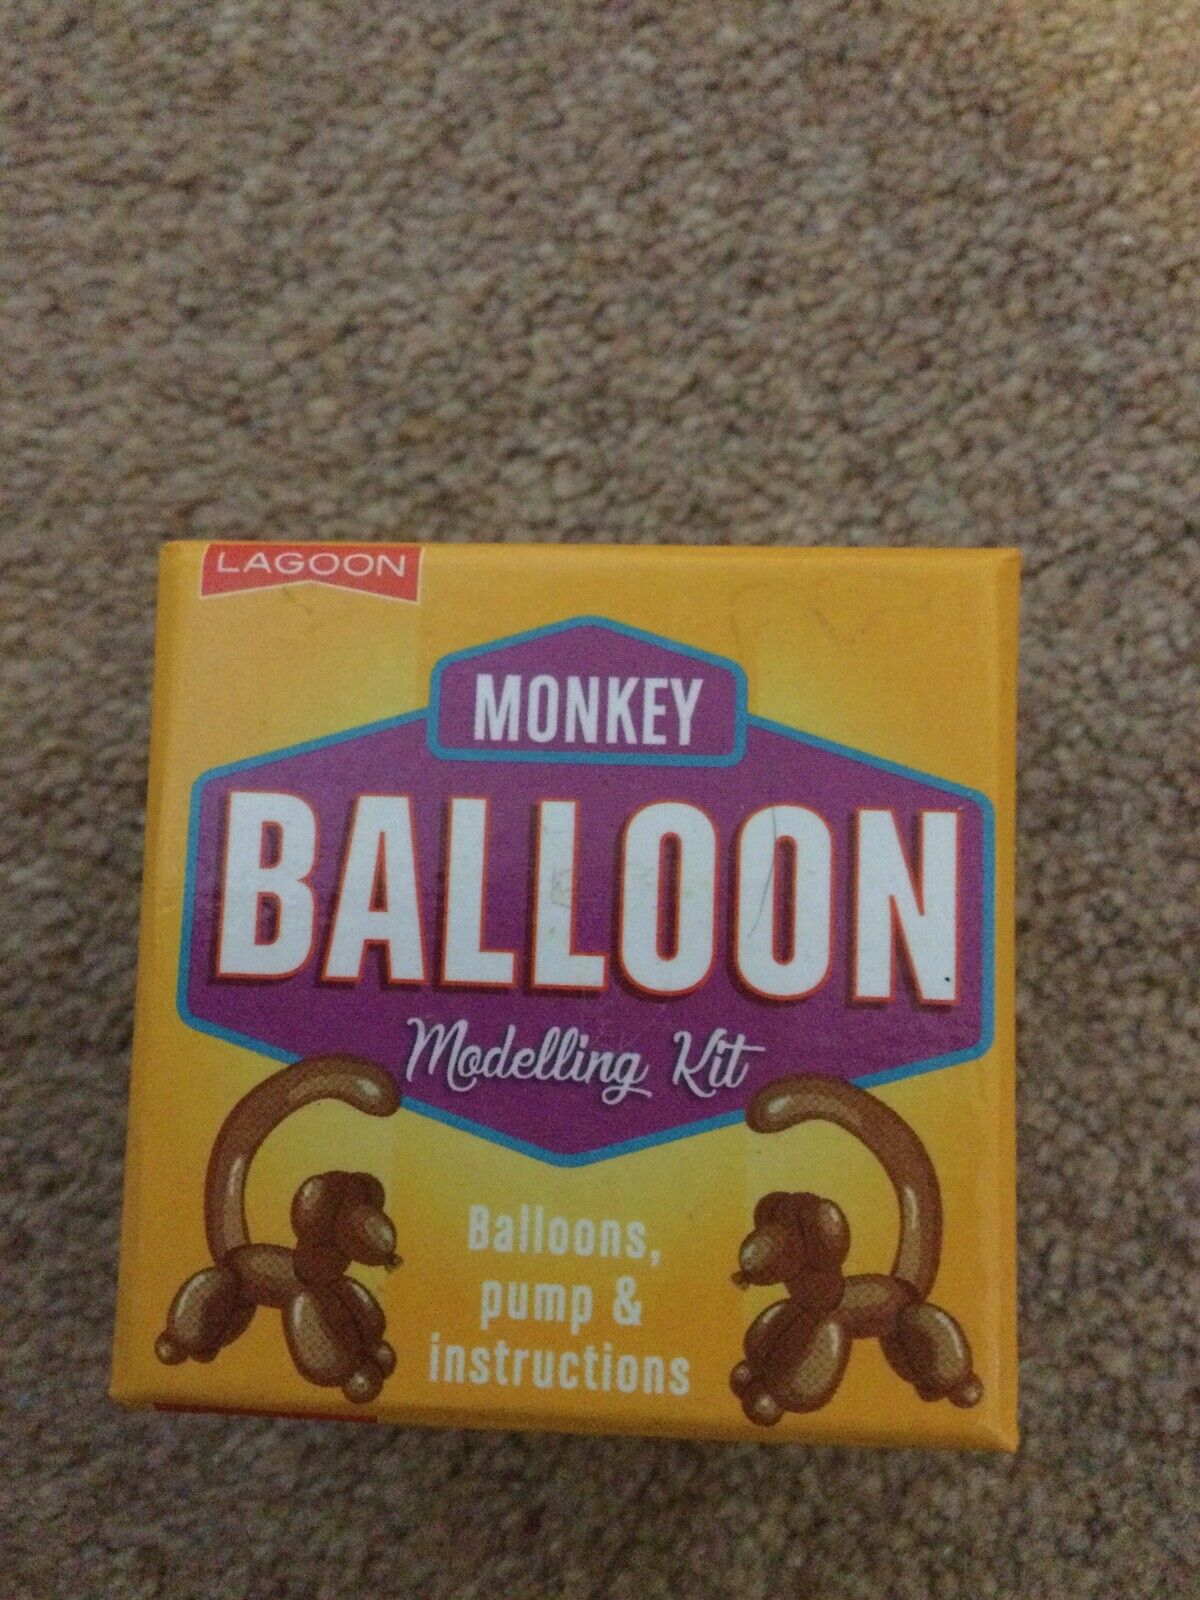 Monkey Balloon Modelling Kit | eBay